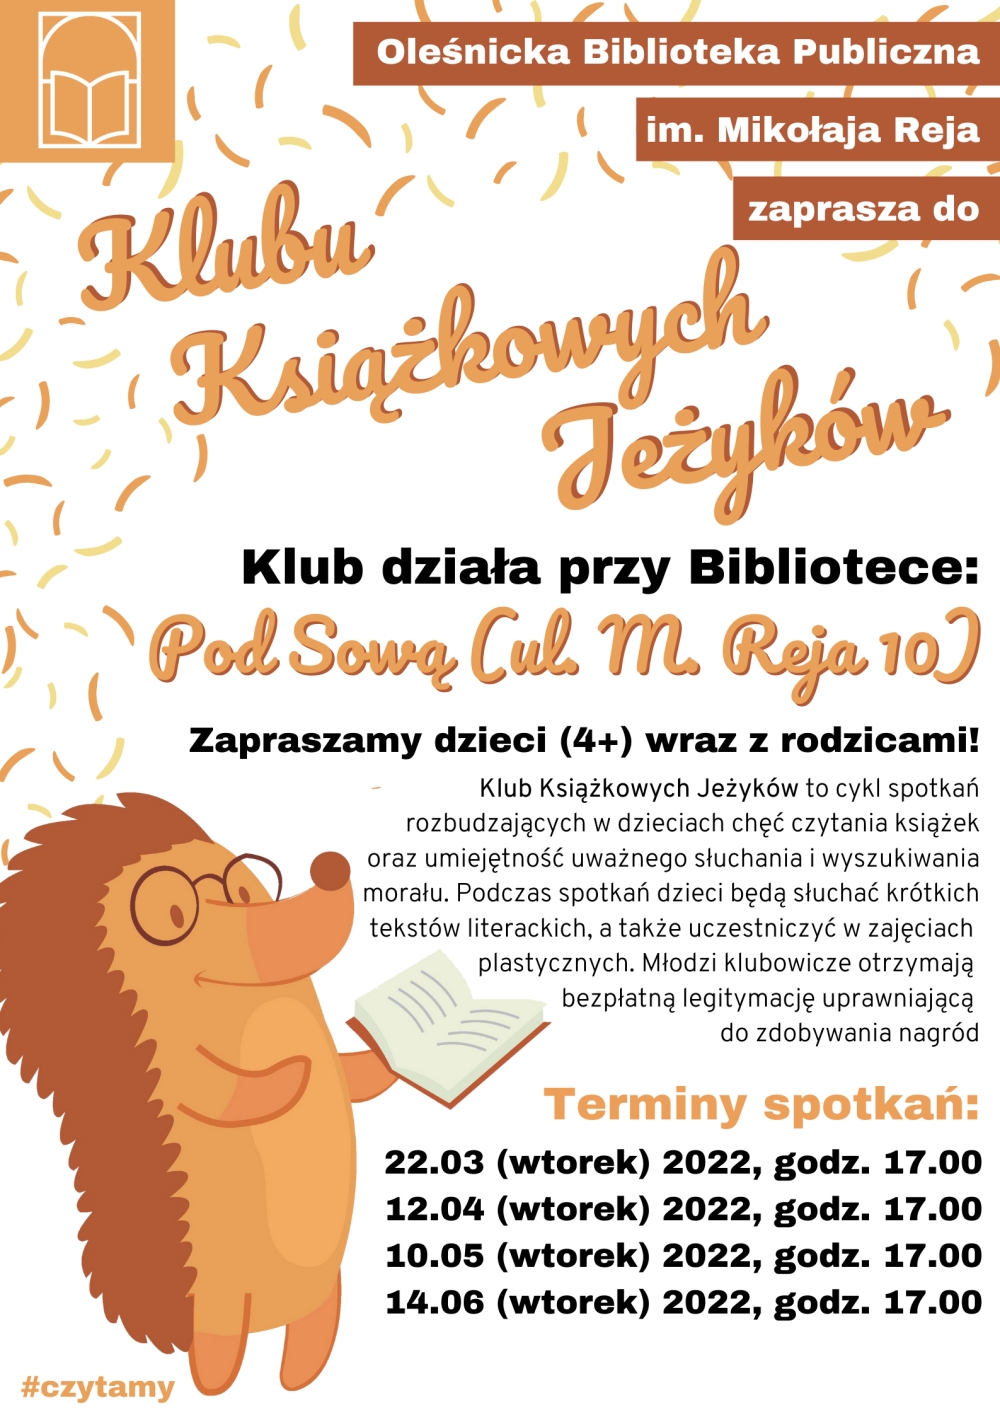 Grafika promująca zajęcia Klubu Książkowych Jeżyków w języku polskim